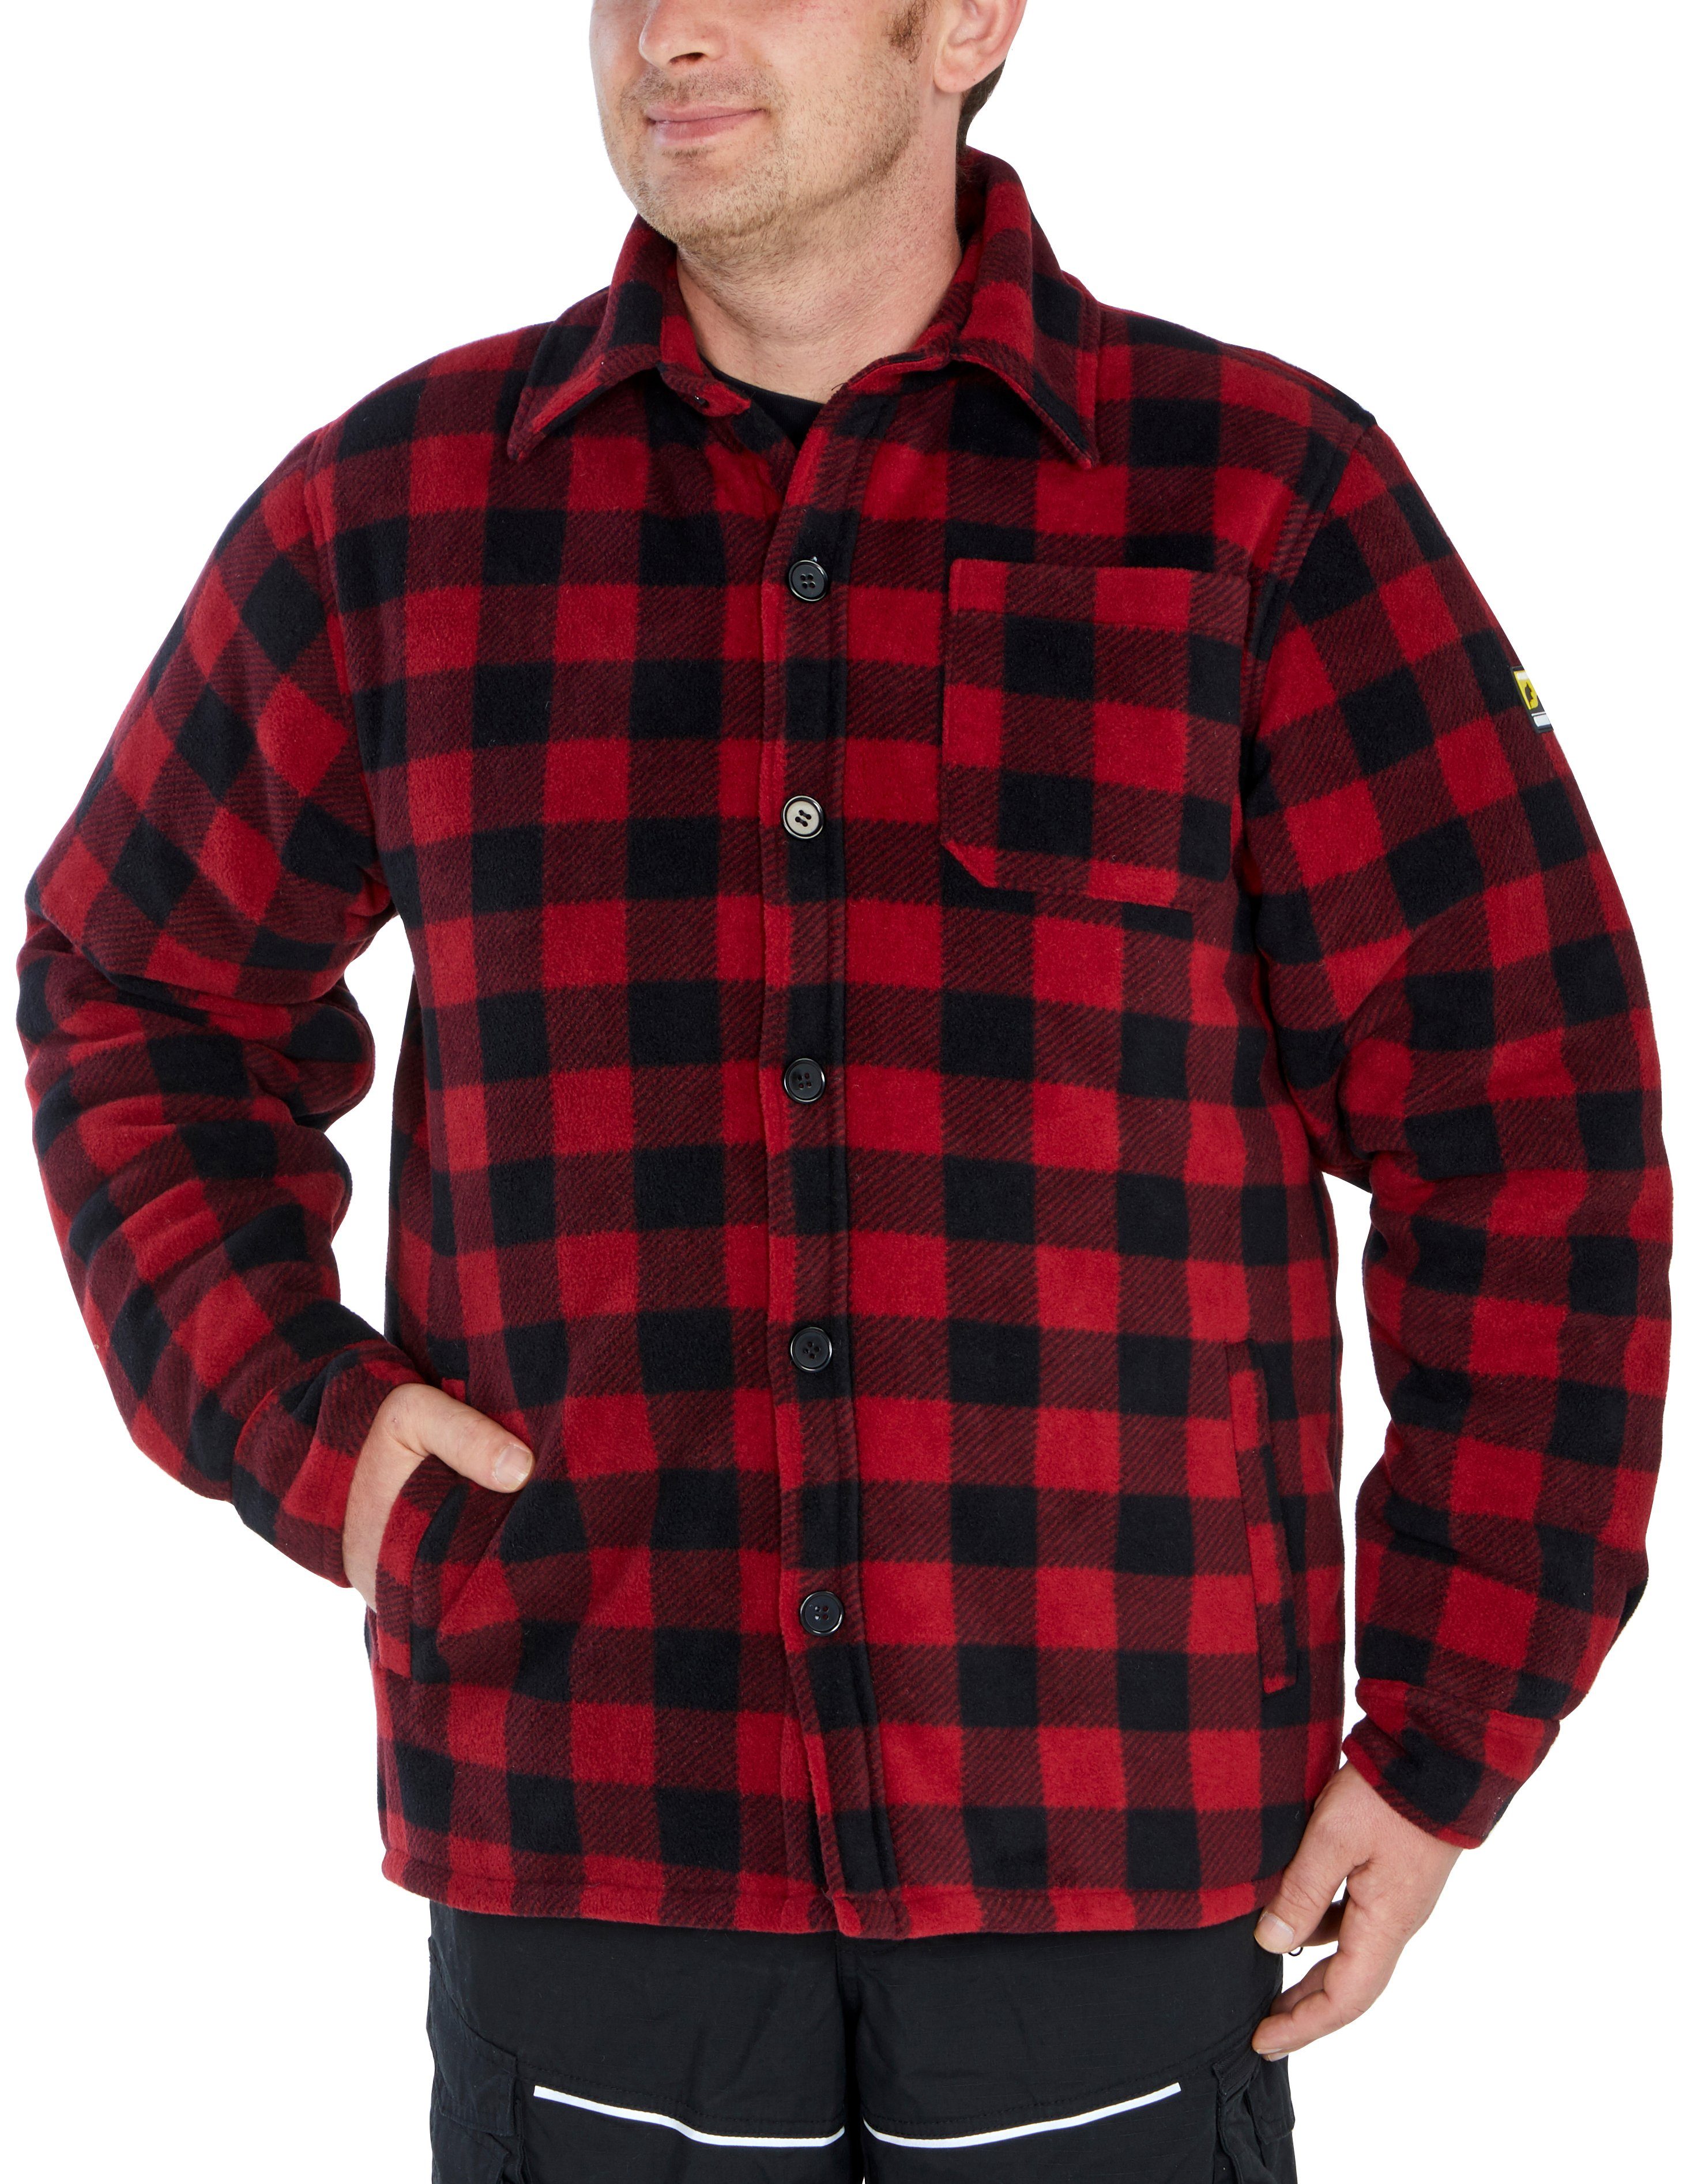 zu Country Hemd gefüttert, 5 Flanellhemd verlängertem Northern (als Flanellstoff mit oder tragen) Rücken, Jacke offen Taschen, warm zugeknöpft rot-schwarz mit